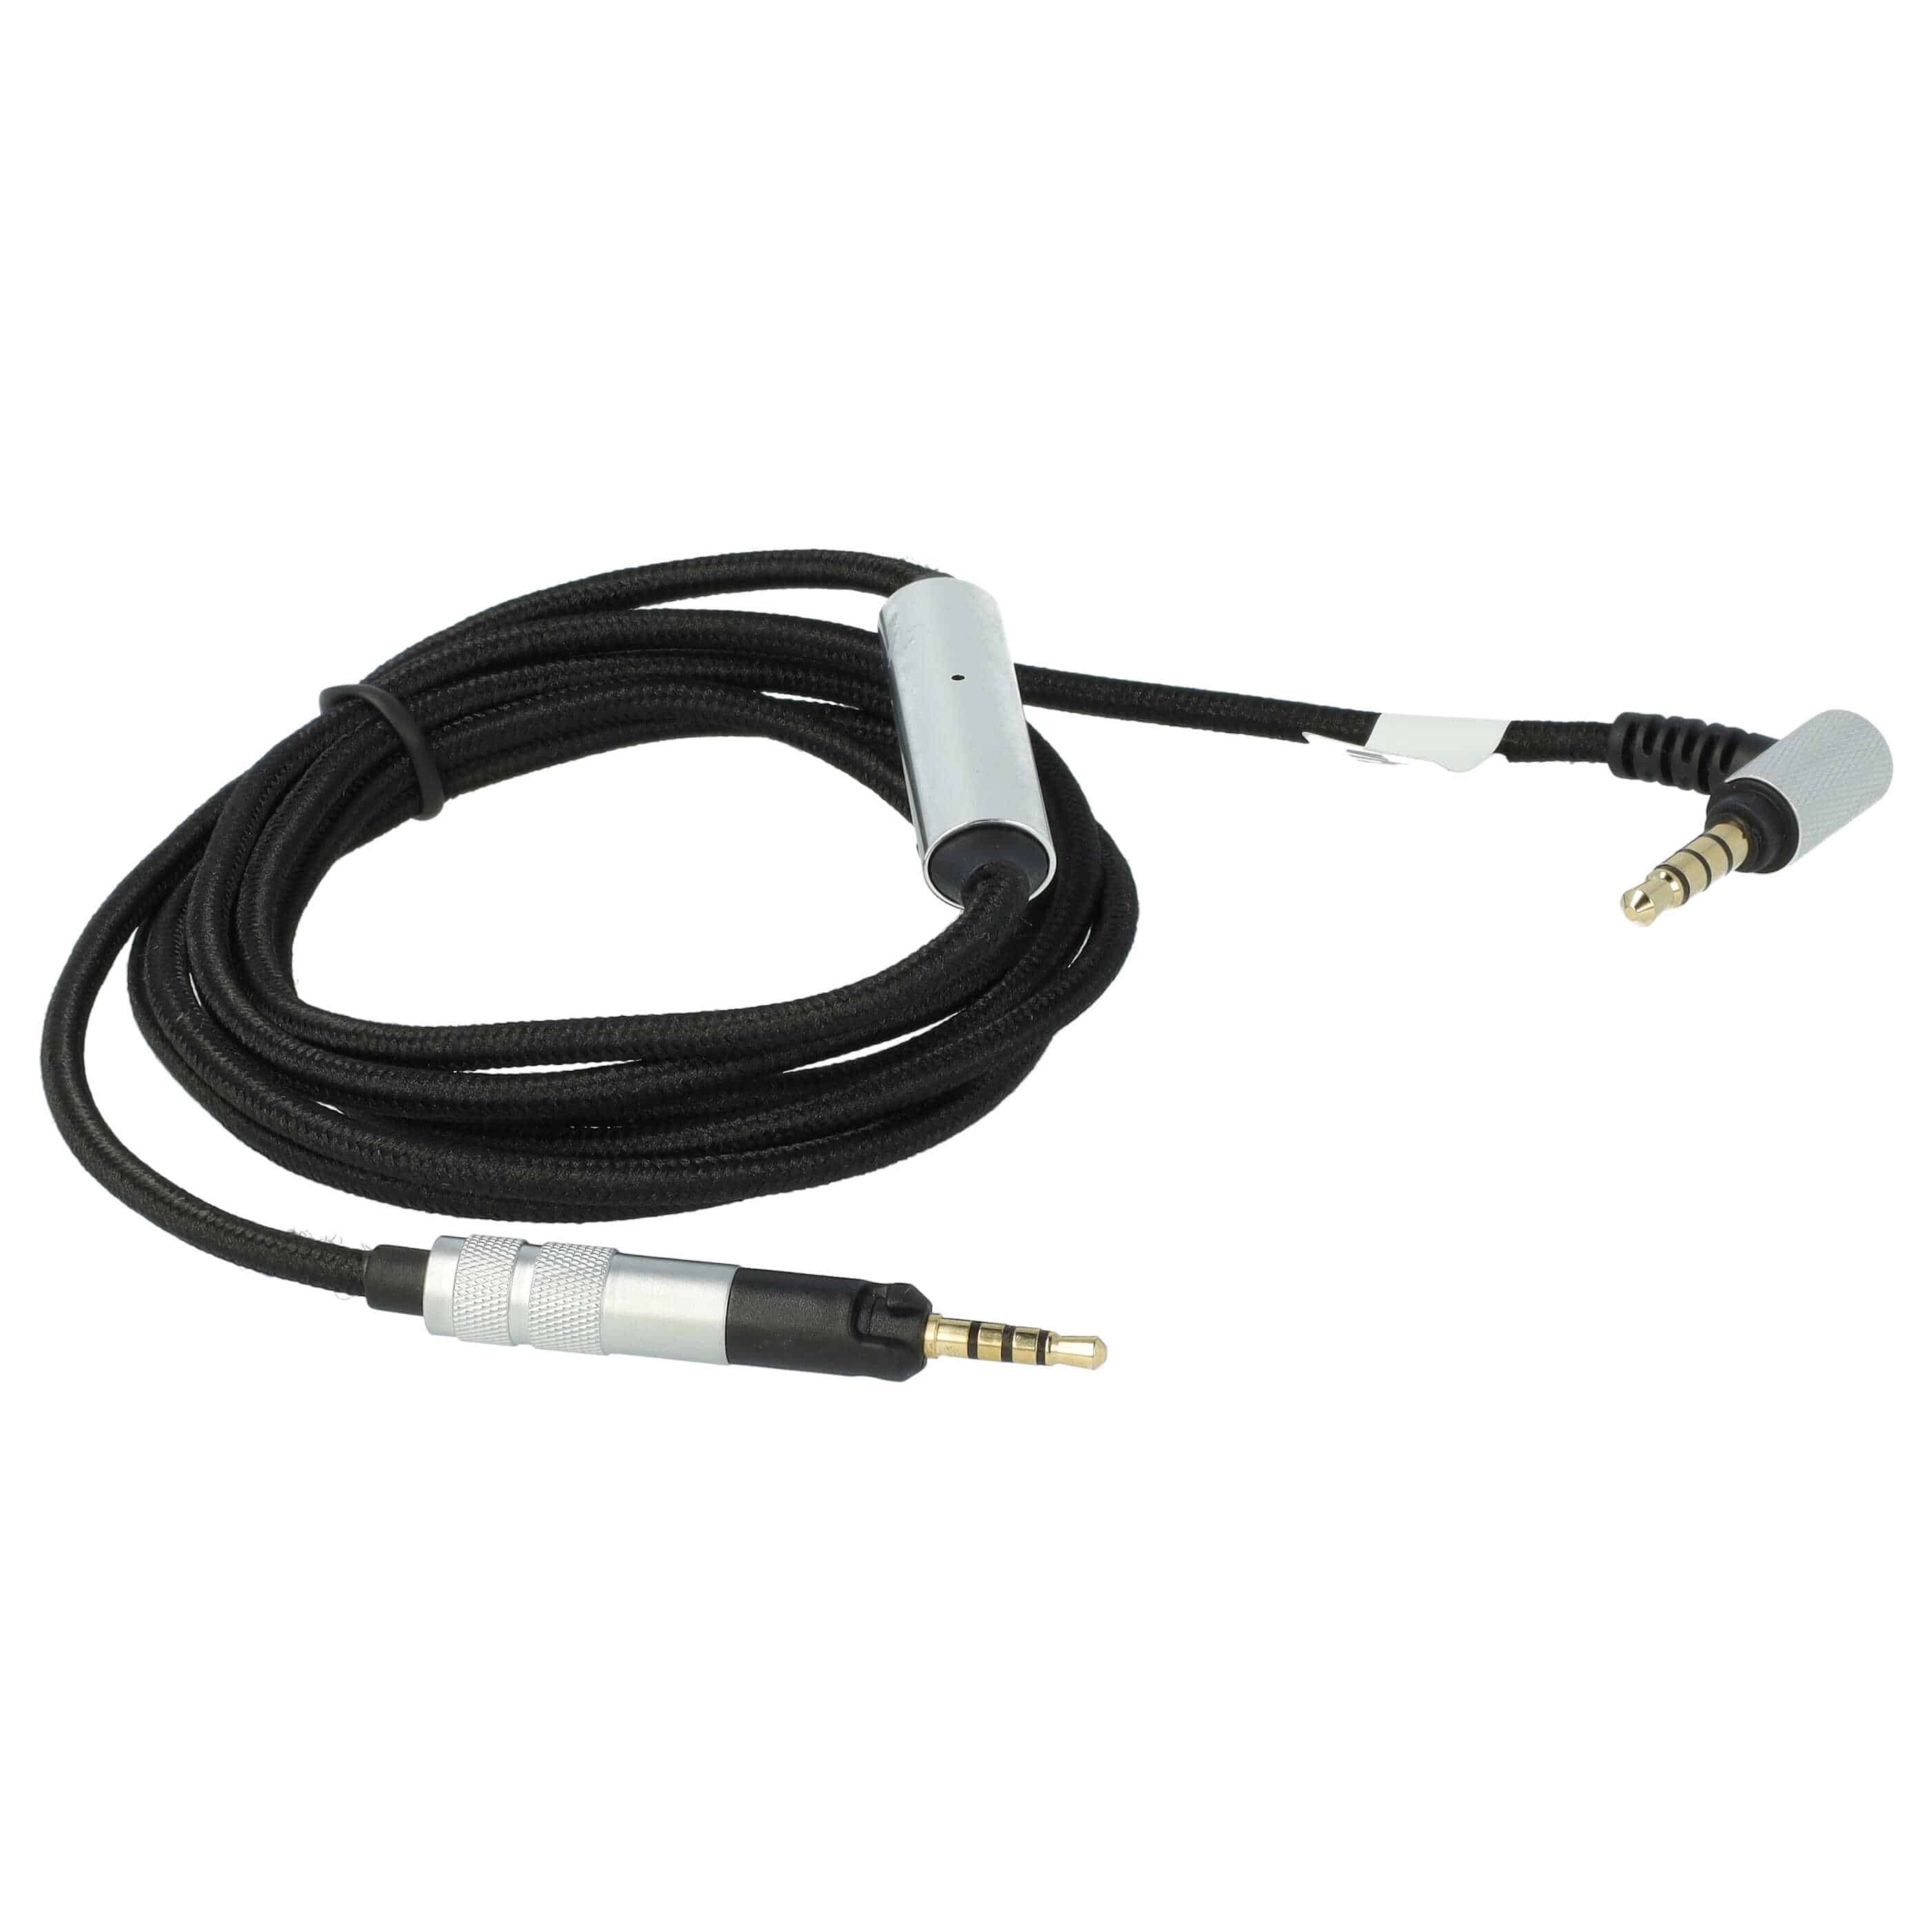 Kabel do słuchawek Y40 AKG, Sennheiser, Bose Y40 - czarny / srebrny, 150 cm